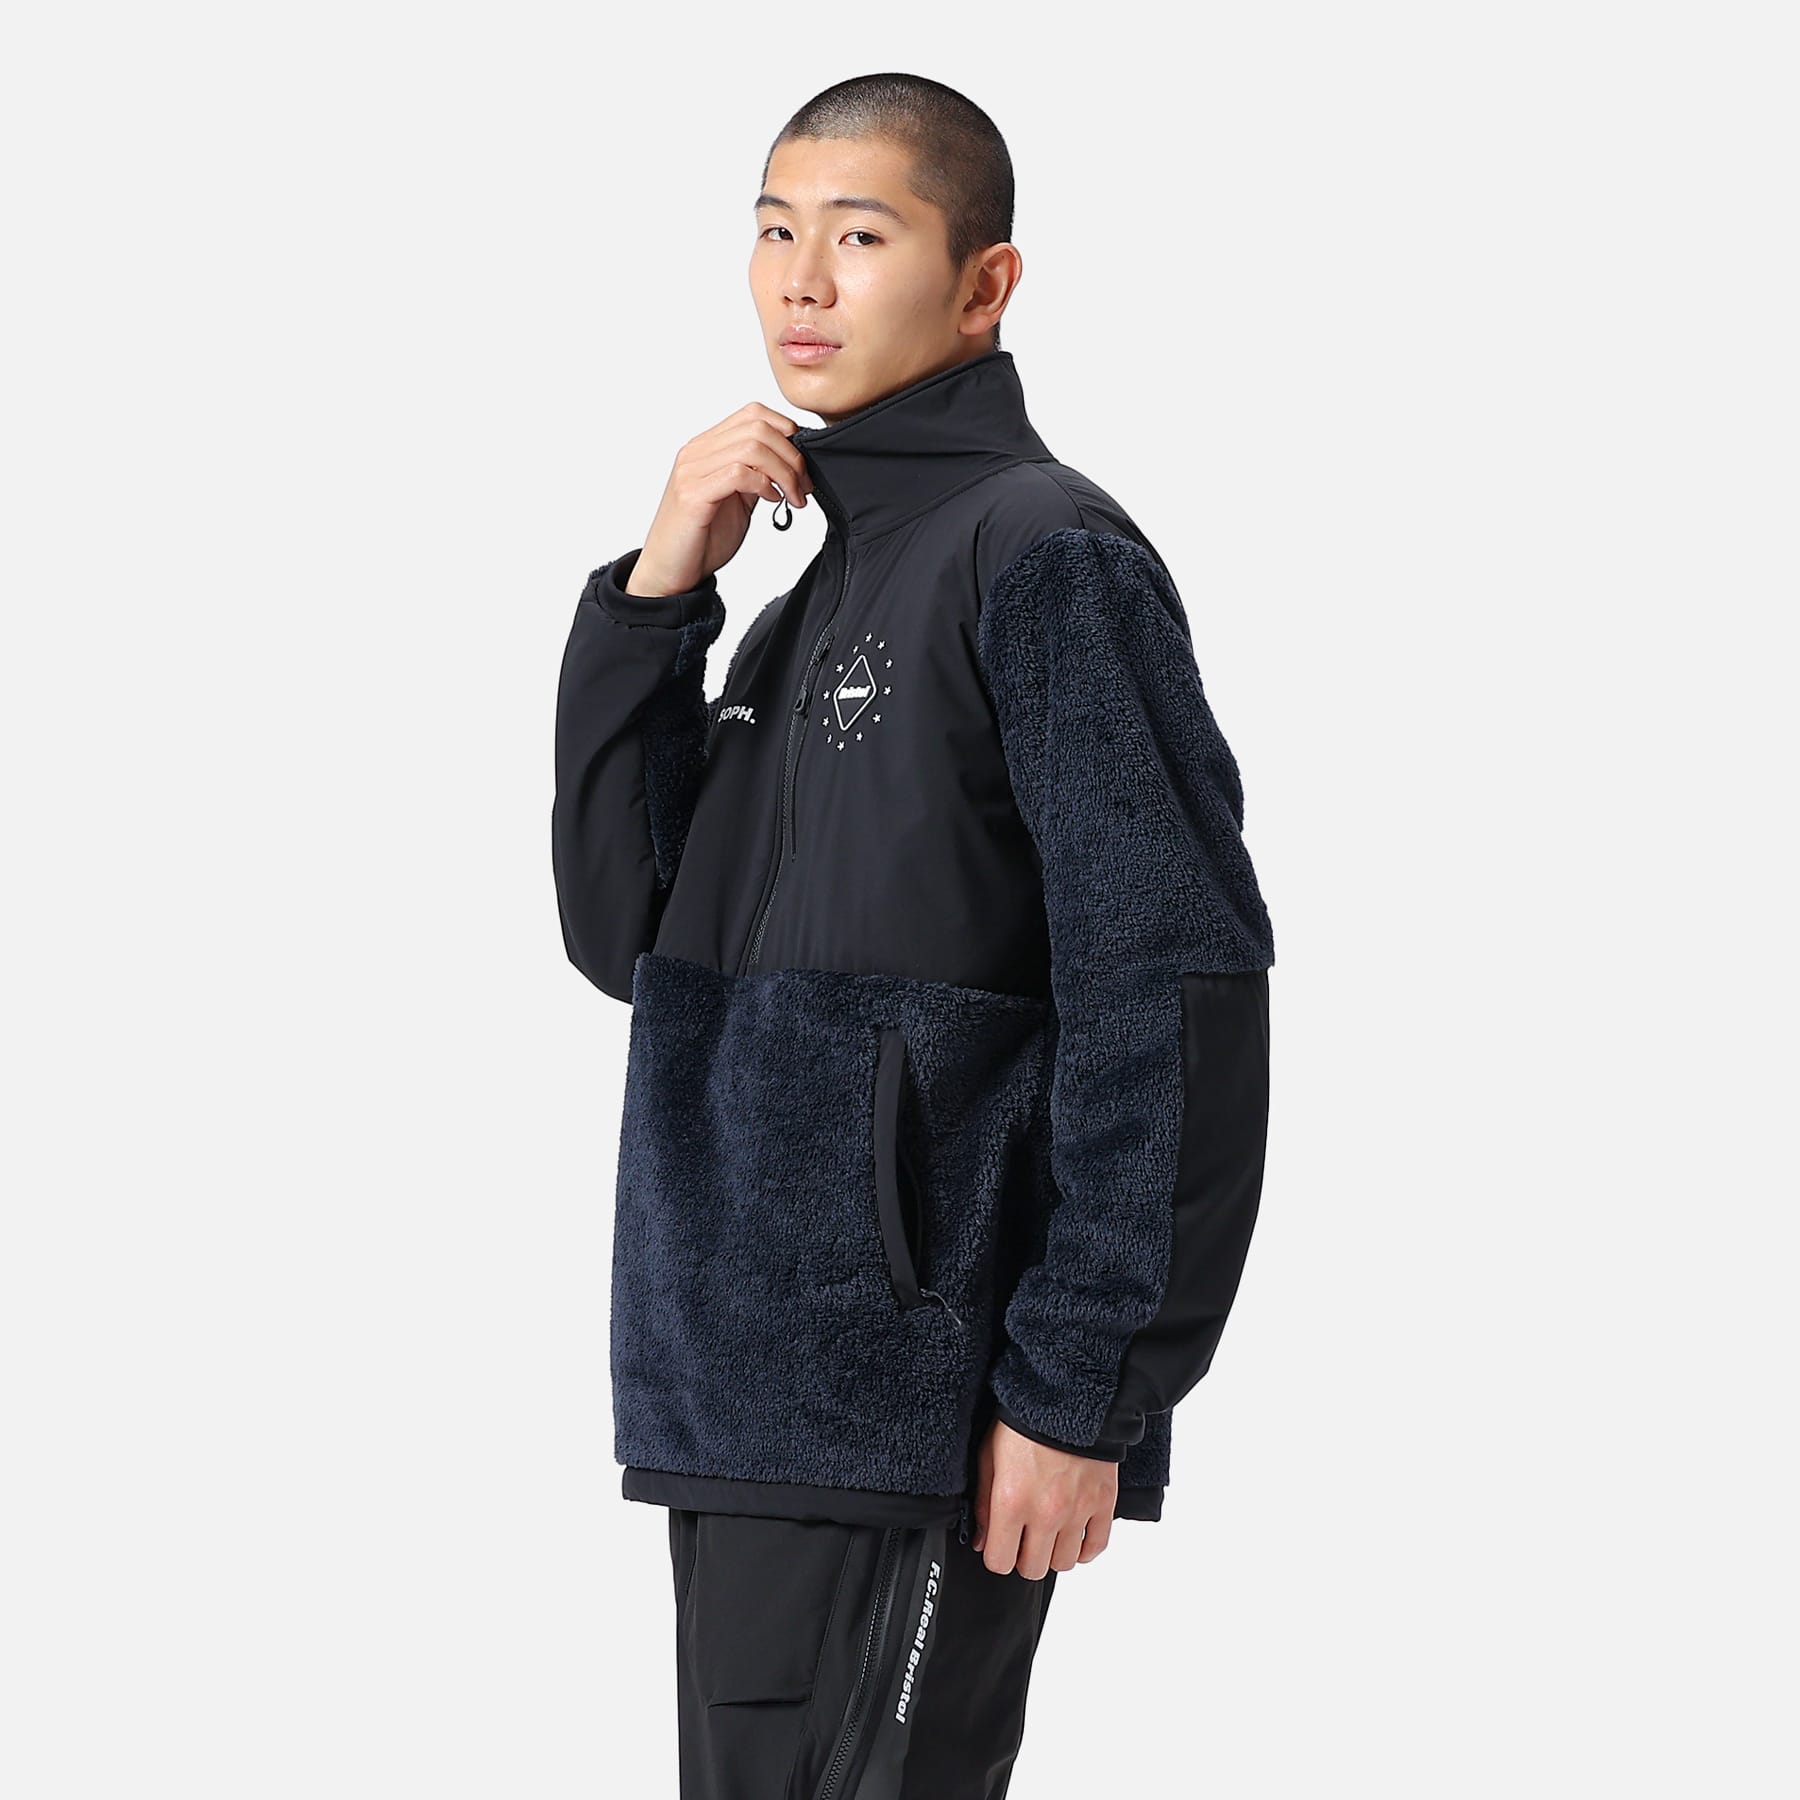 【M】FCRB POLARTEC fleece jacket